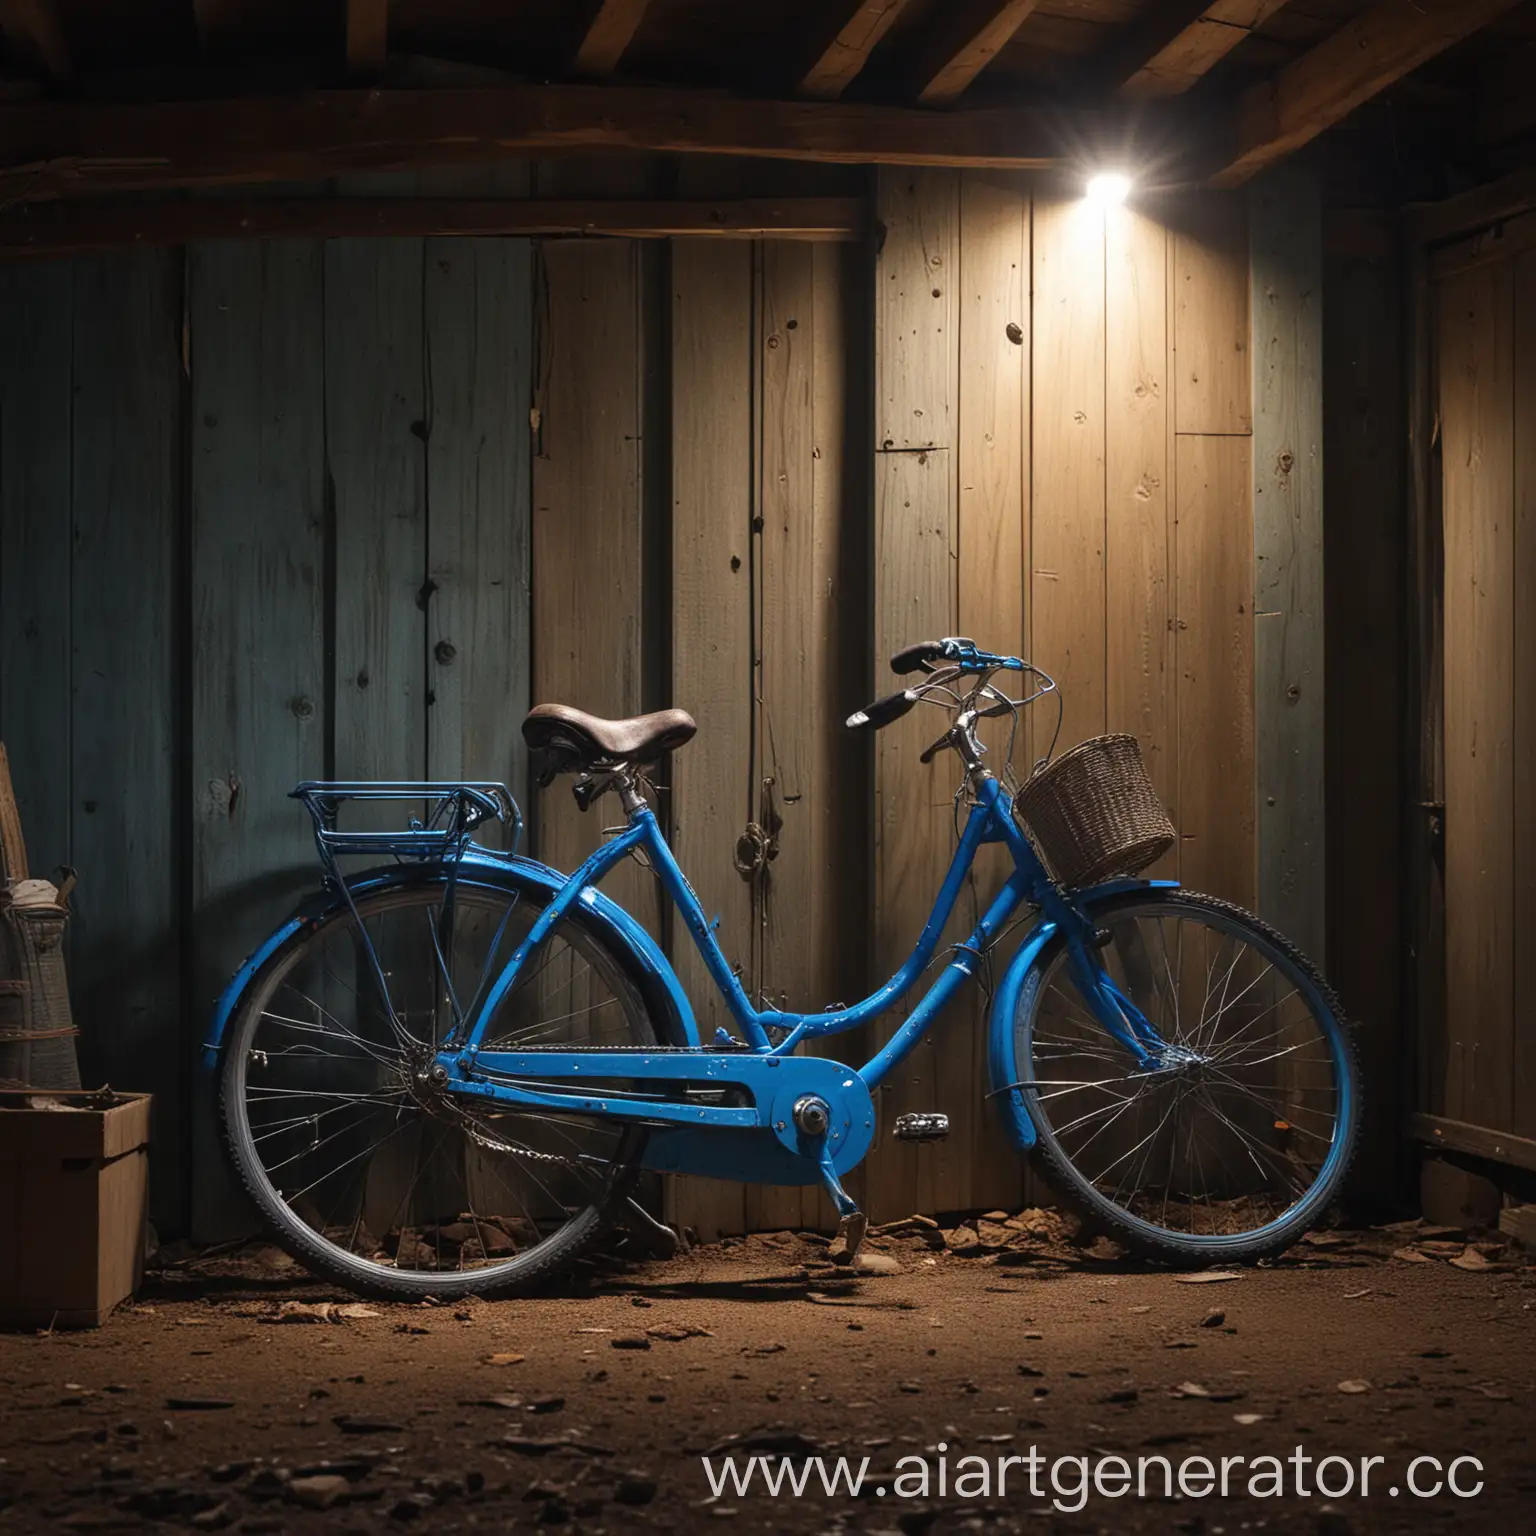 натюрморт в сарае с голубым велосипедом и на него падает луч света